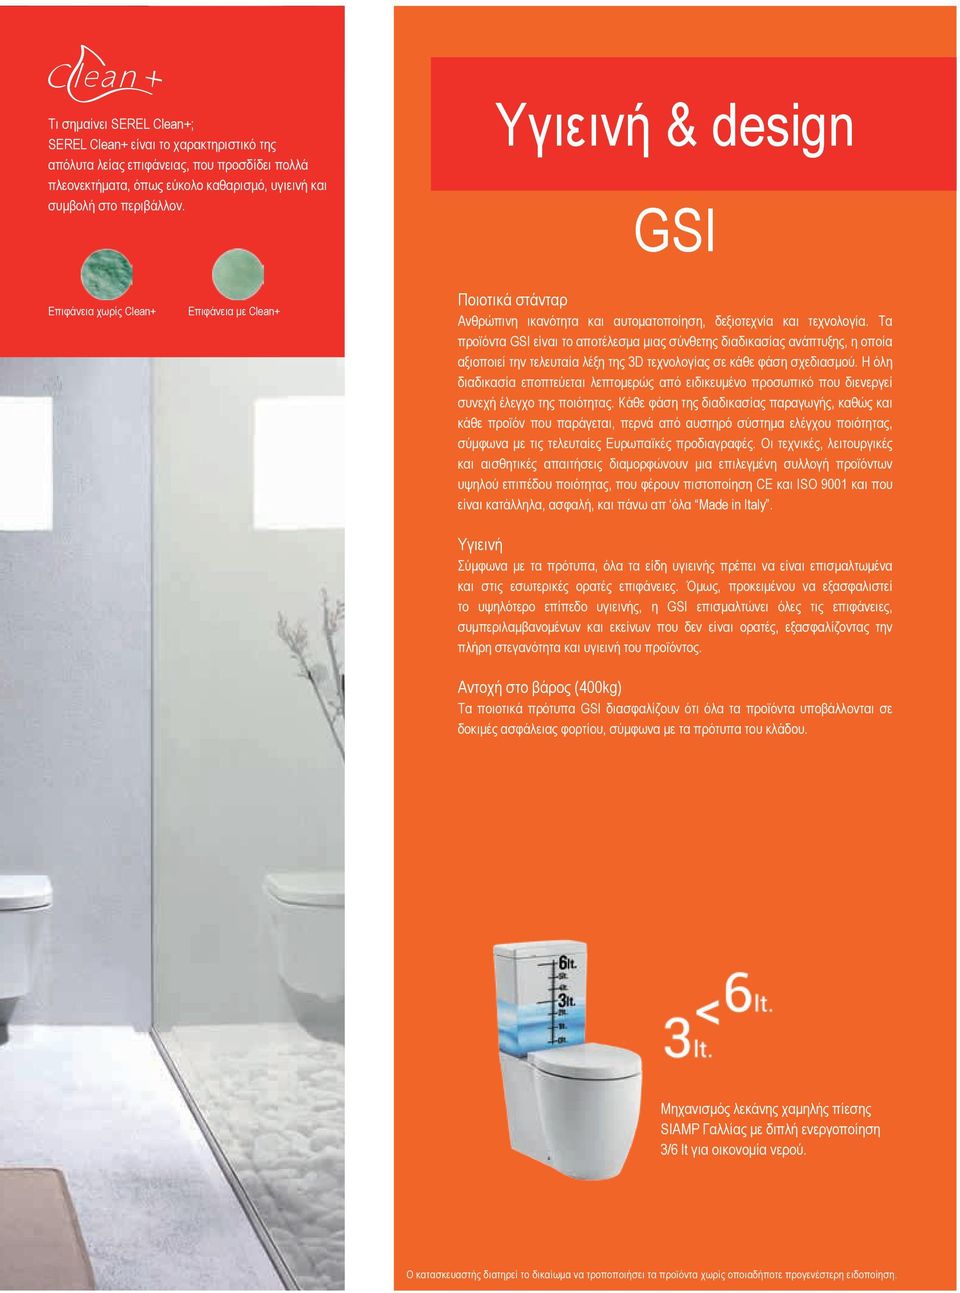 Τα προϊόντα GSI είναι το αποτέλεσμα μιας σύνθετης διαδικασίας ανάπτυξης, η οποία αξιοποιεί την τελευταία λέξη της 3D τεχνολογίας σε κάθε φάση σχεδιασμού.